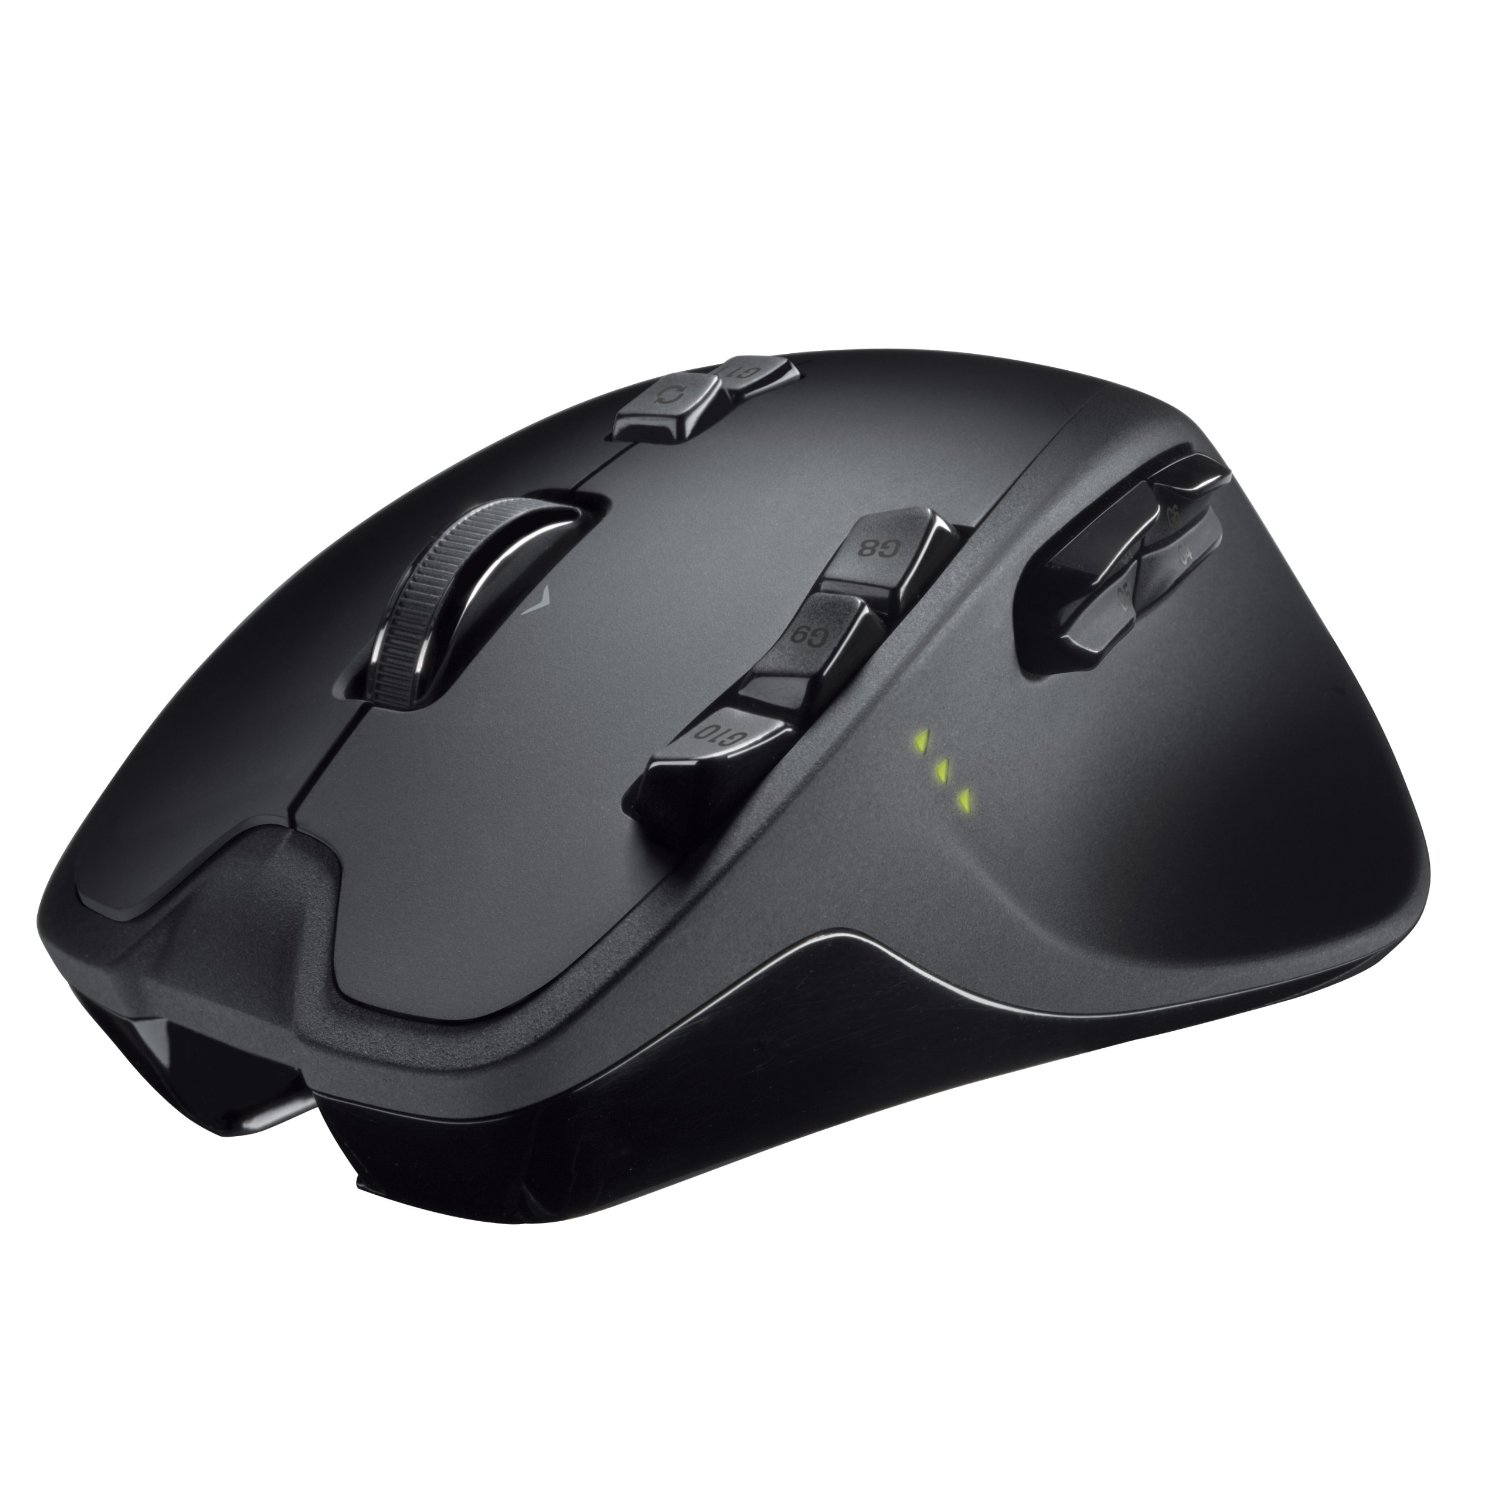 Logitech Wireless Gaming Mouse G700 | Best Wireless Keyboard